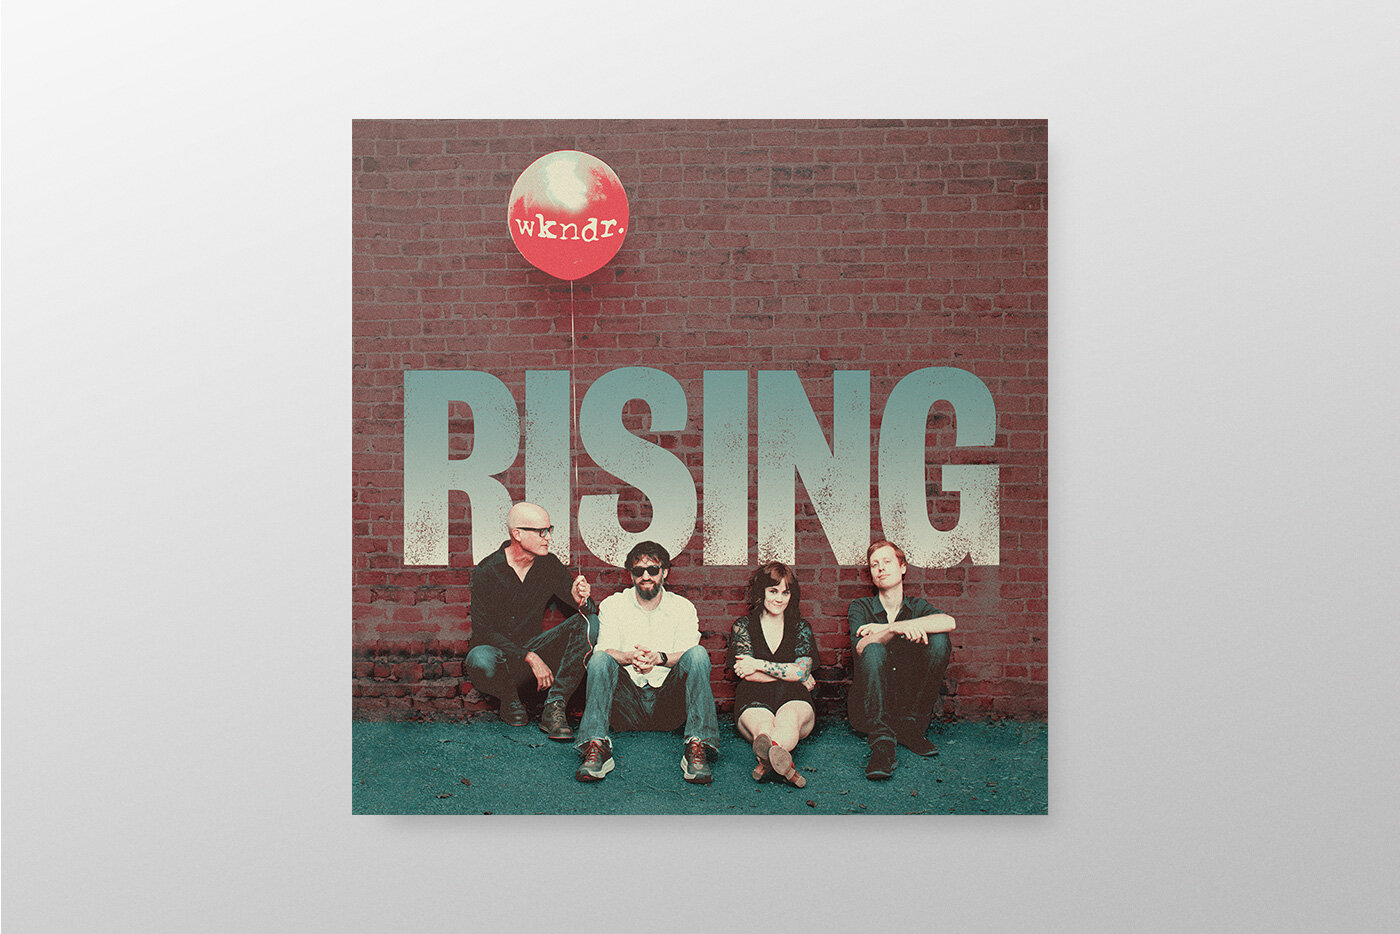 WKNDR Rising Album Cover